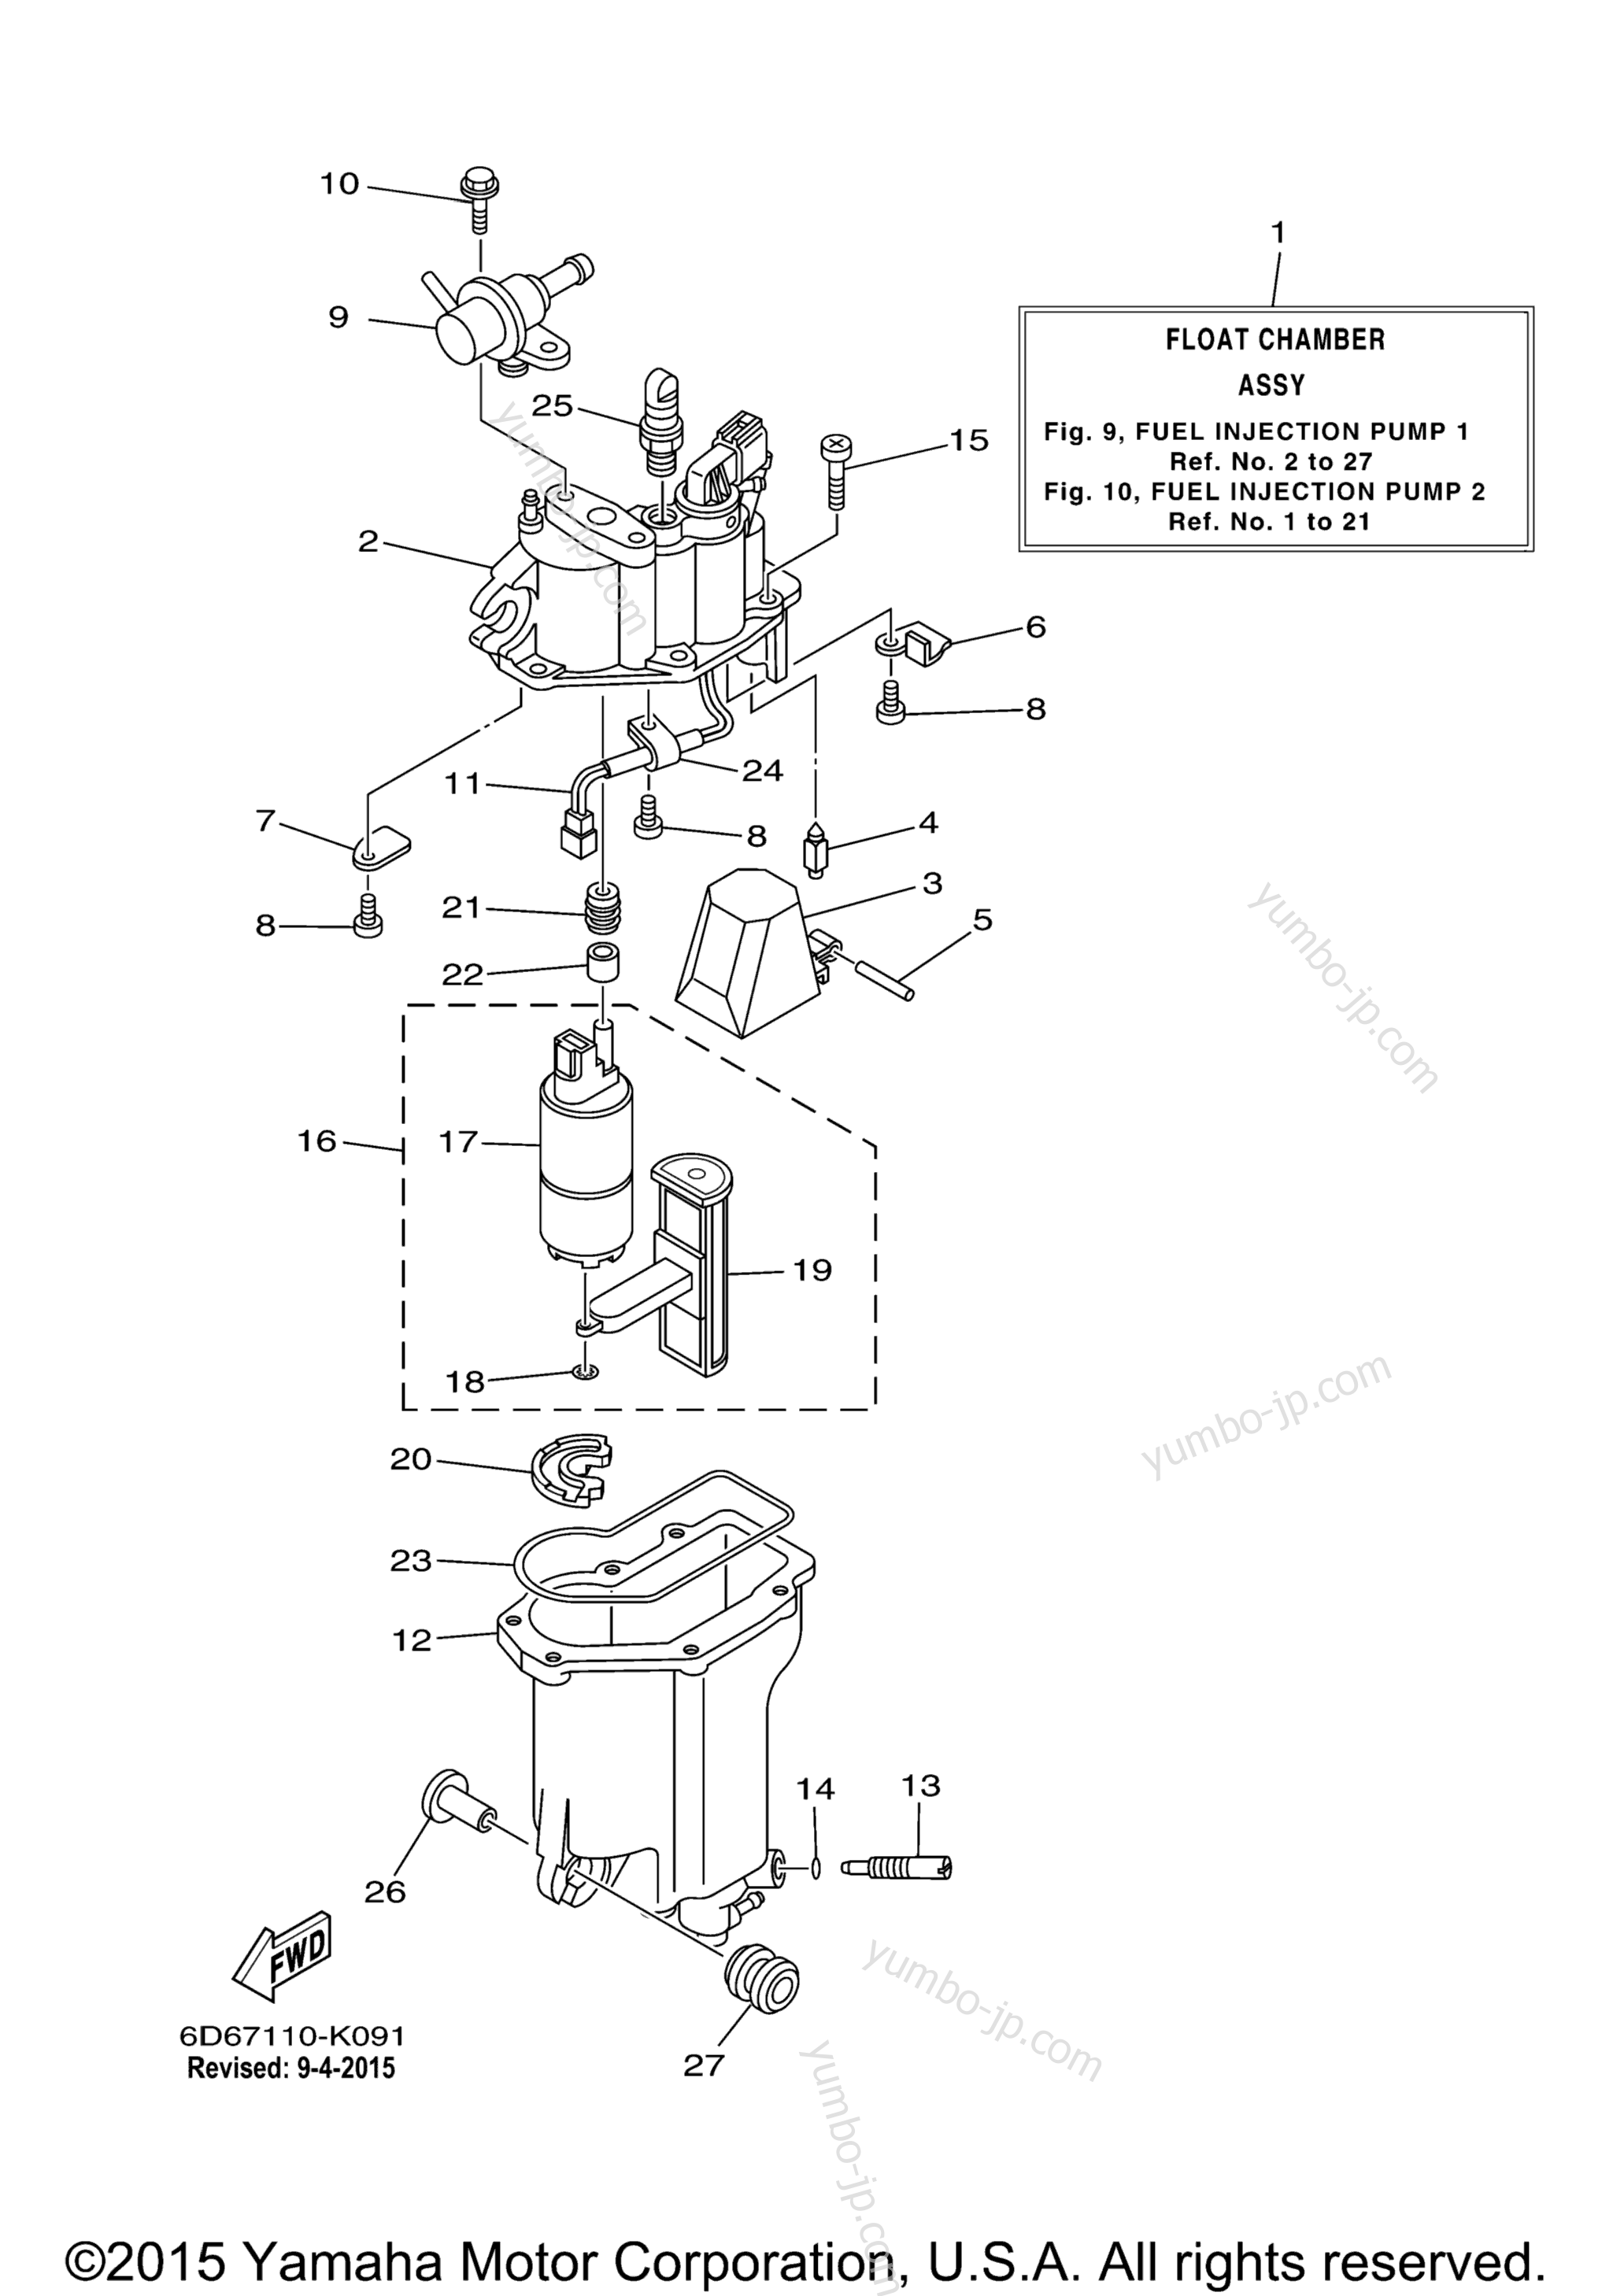 Fuel Injection Pump 1 для лодочных моторов YAMAHA F90TLR_041 (0411) 2006 г.